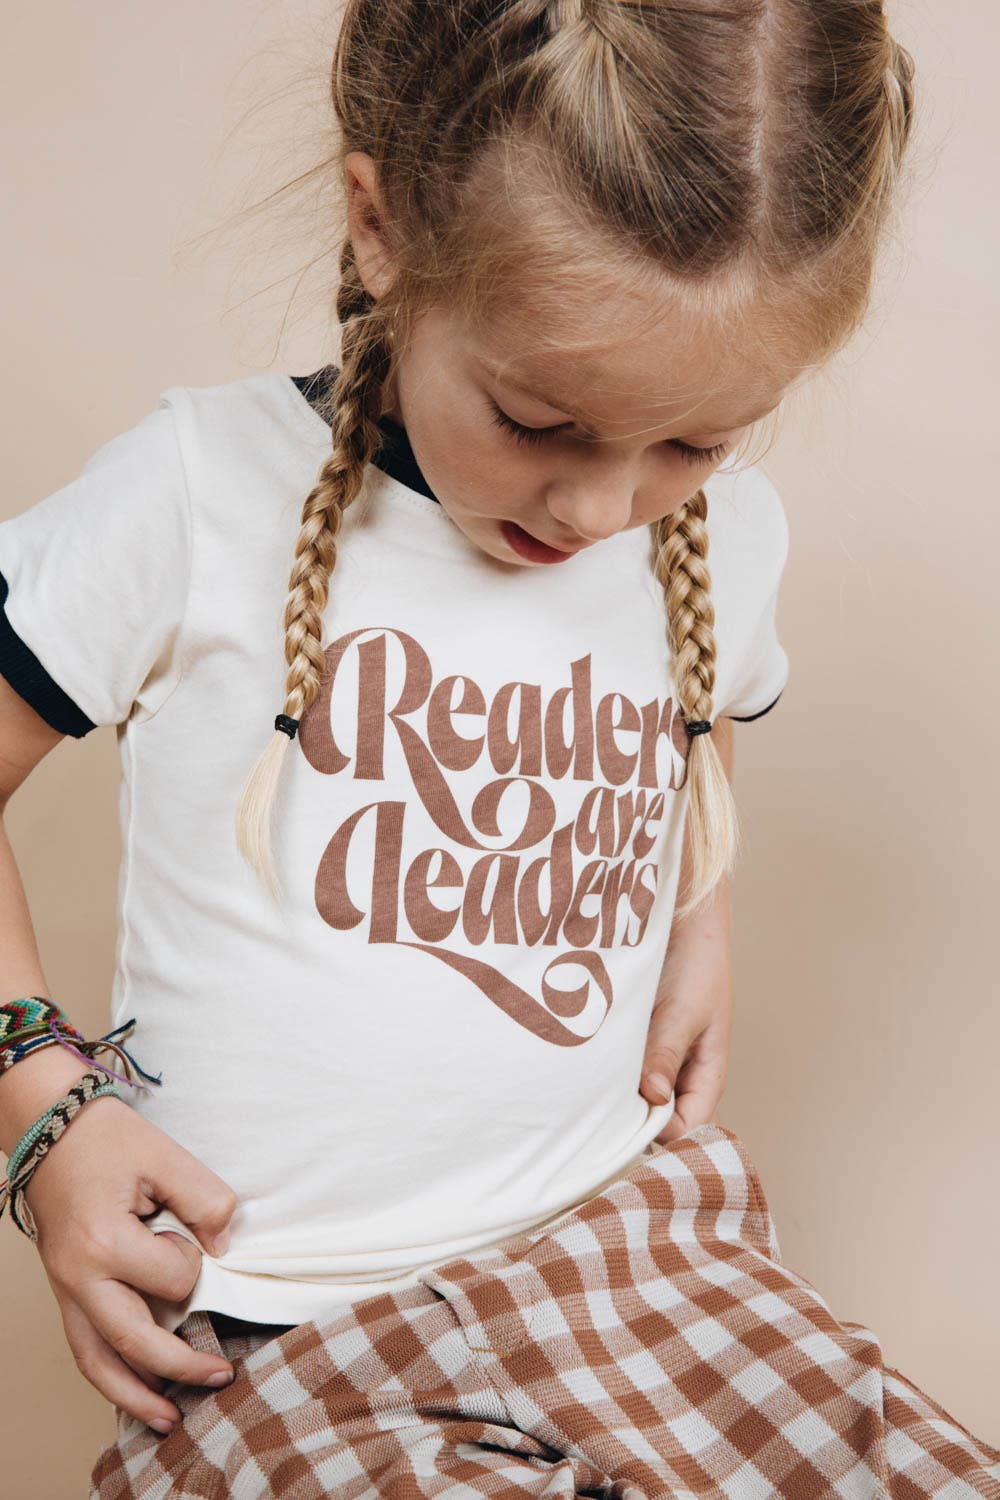 Readers are Leaders | Kids